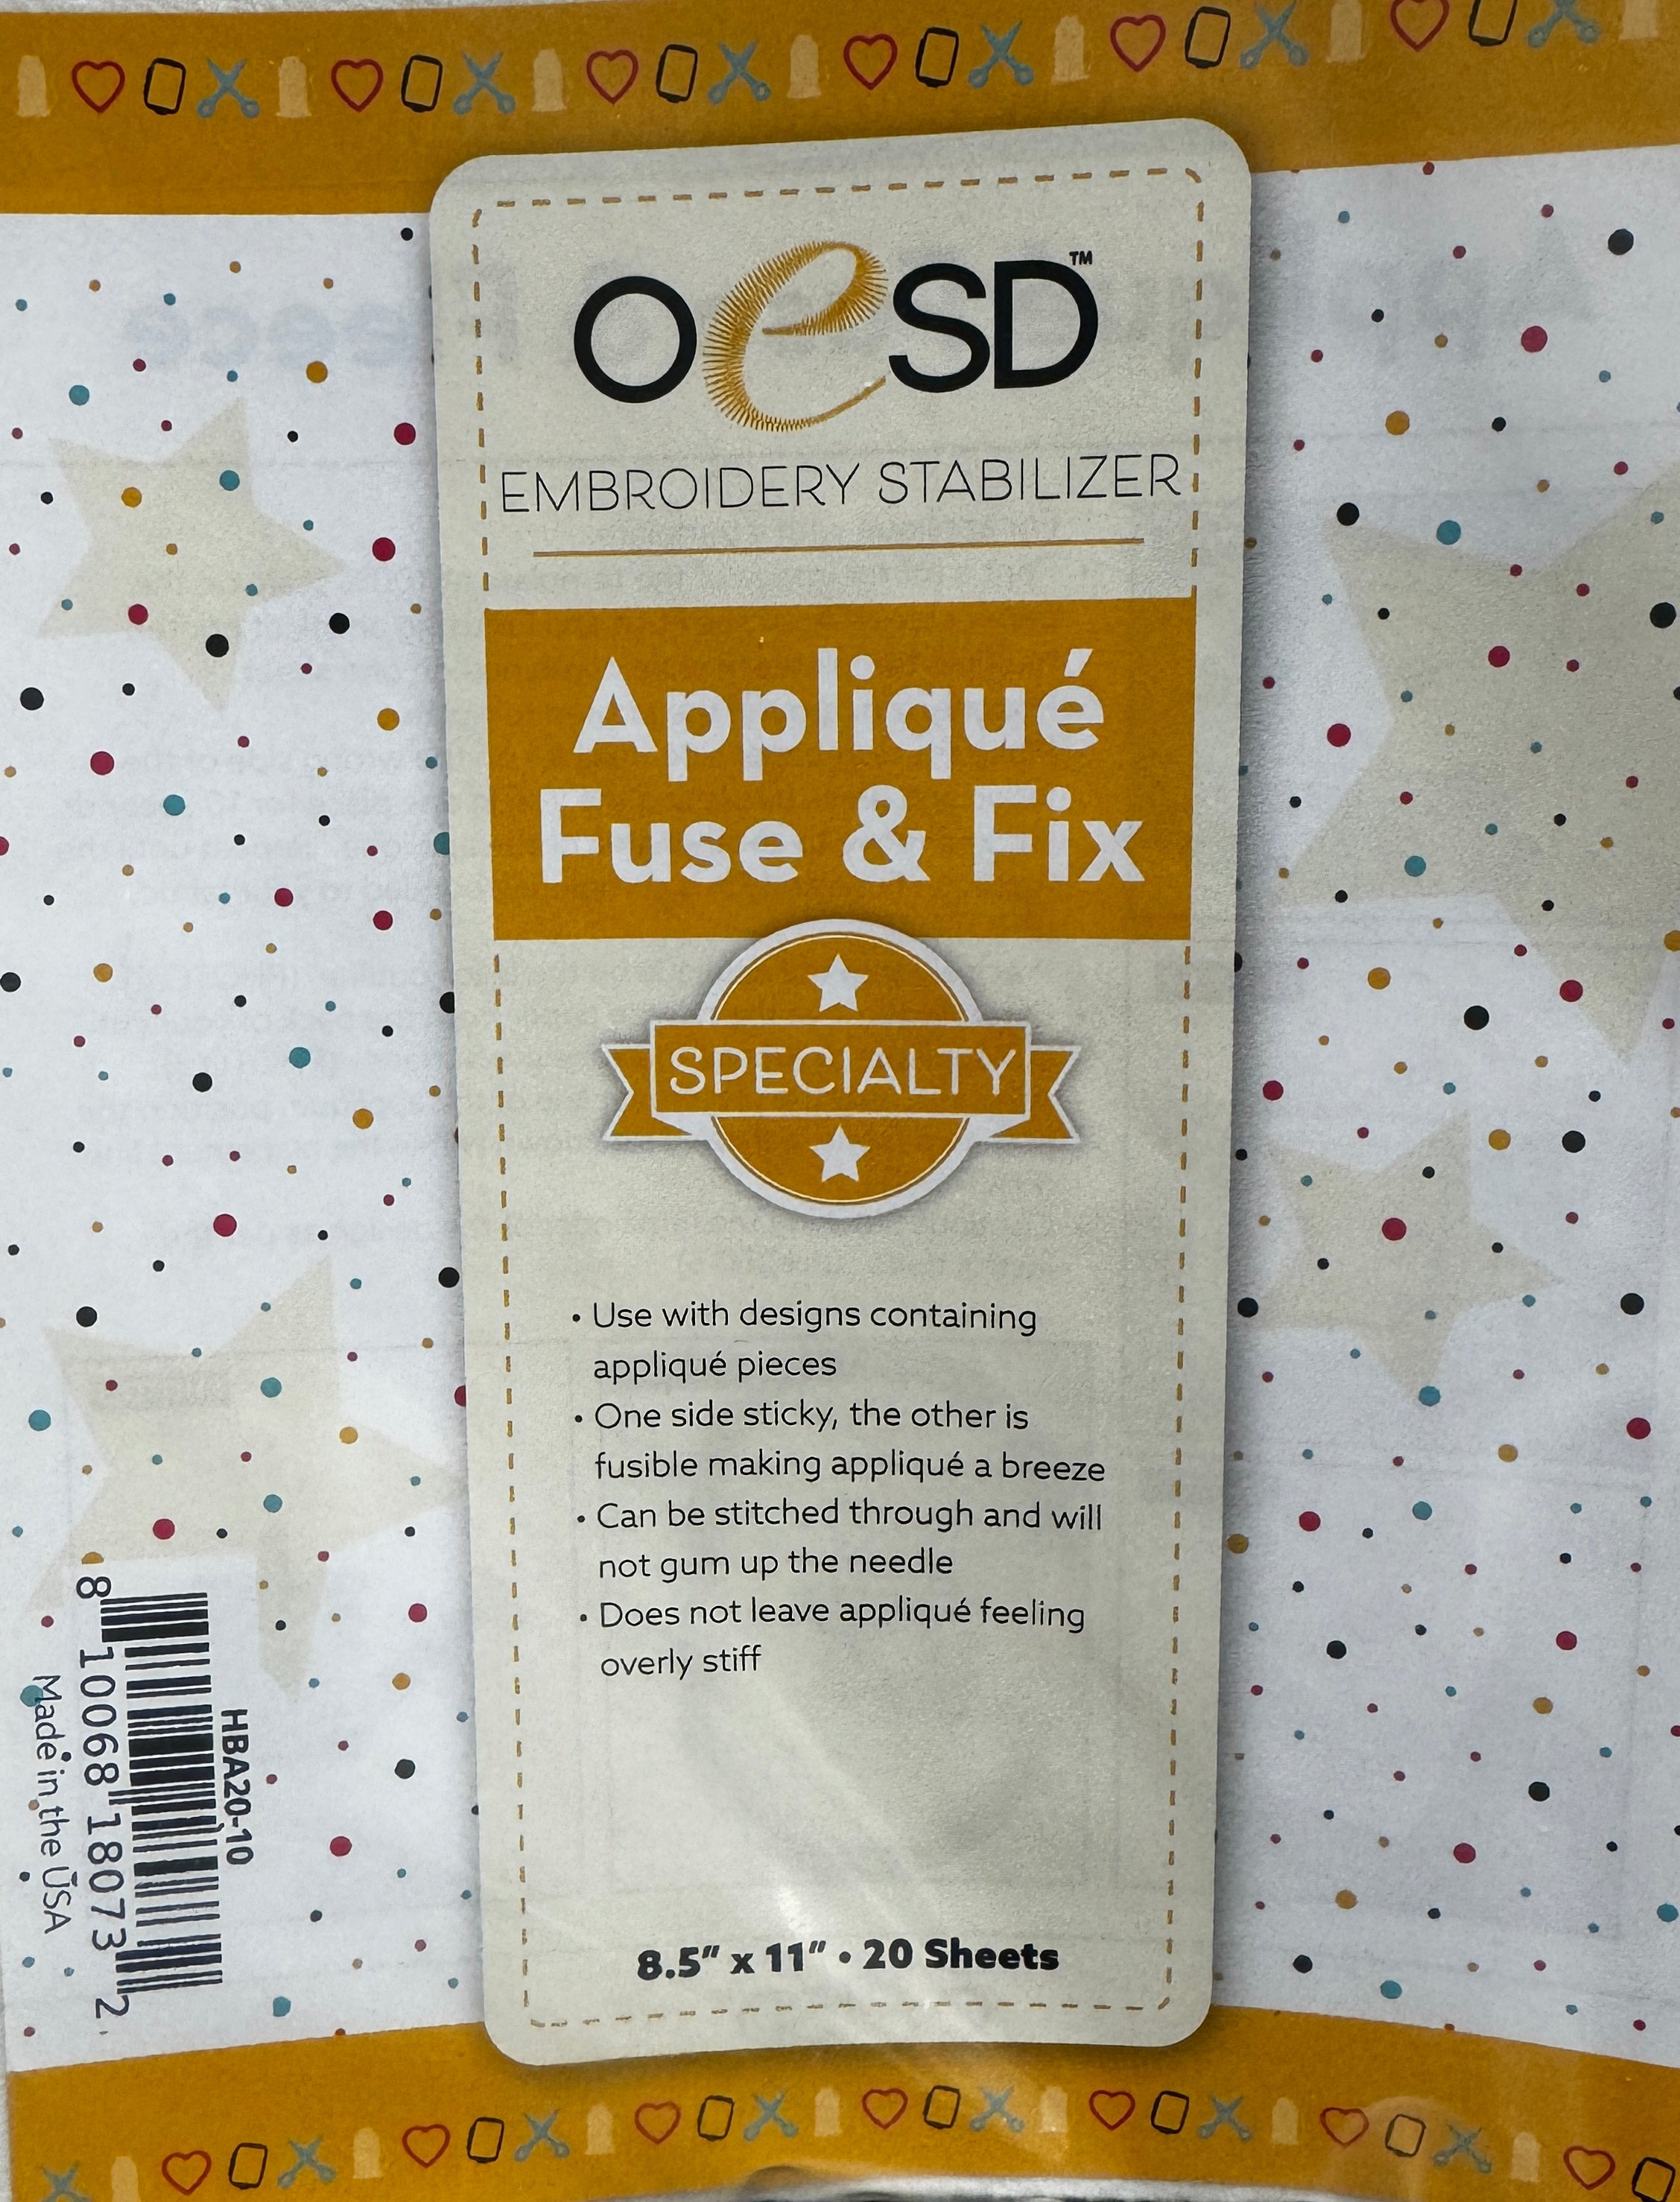 OESD Applique Fuse & Fix